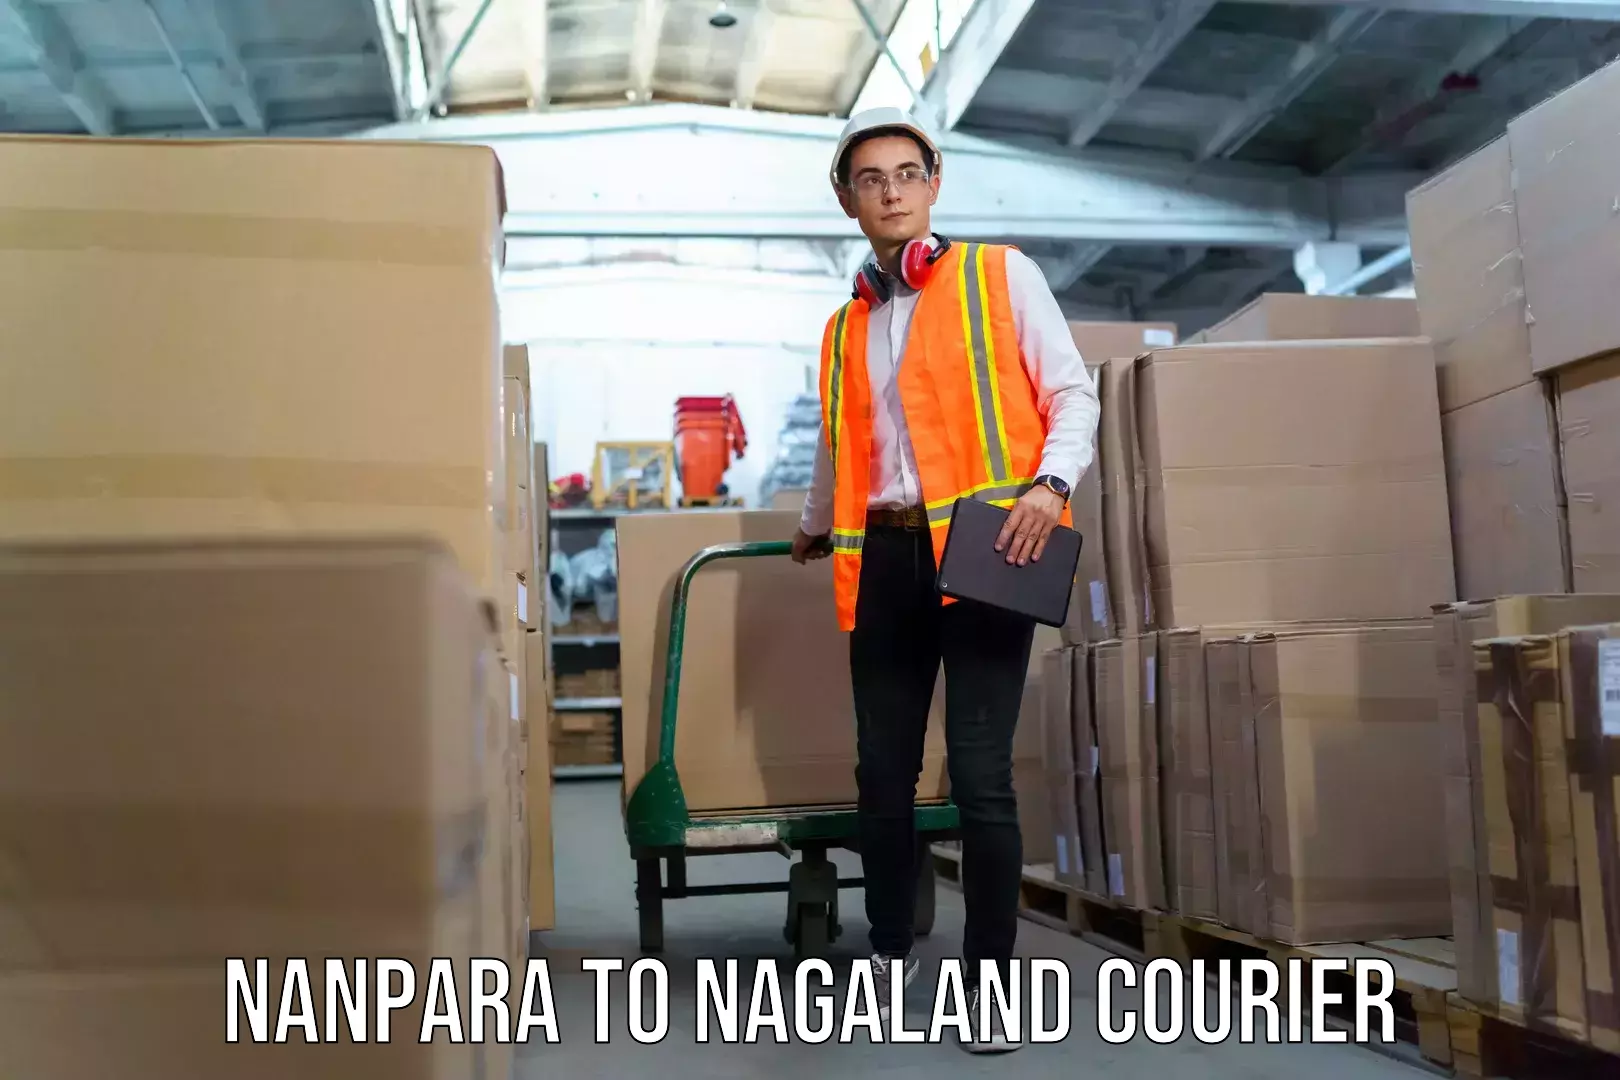 Luggage shipping planner Nanpara to Nagaland